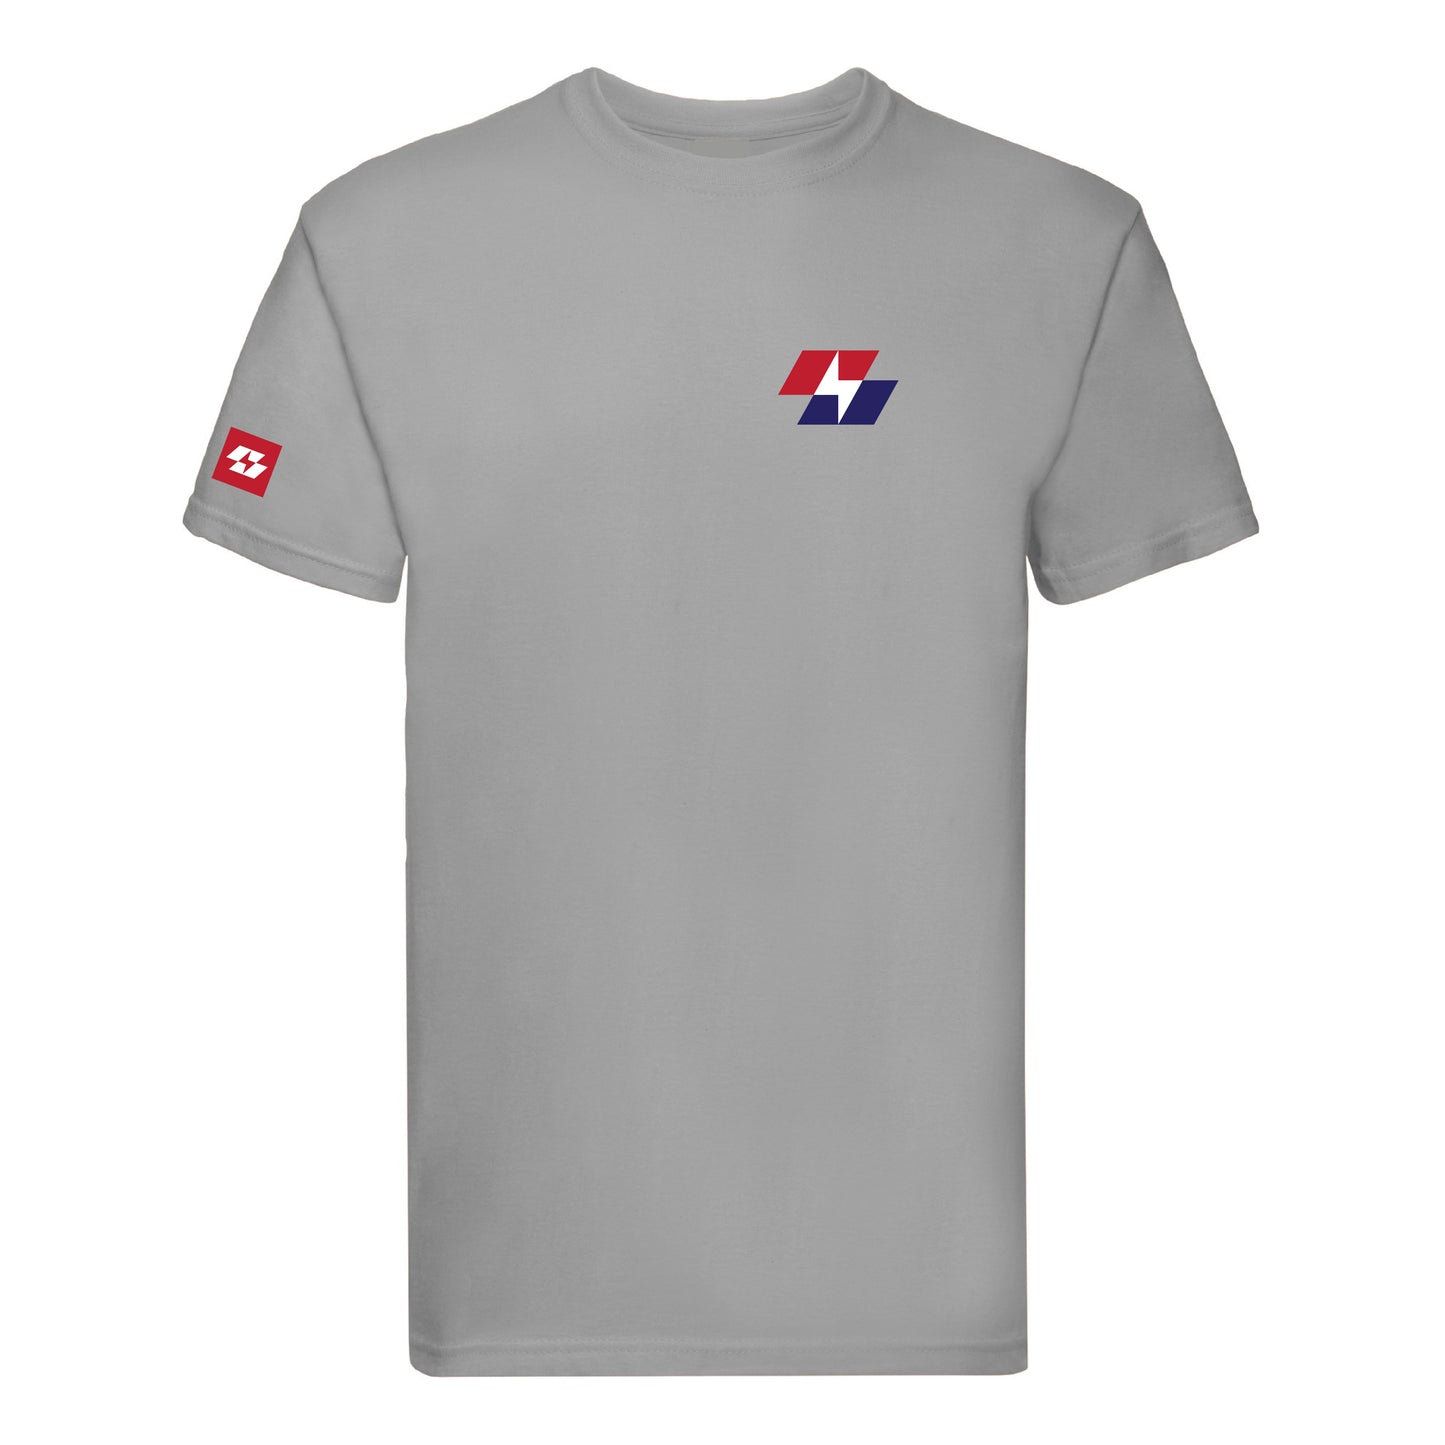 Robot Force ® Lightning T-Shirt